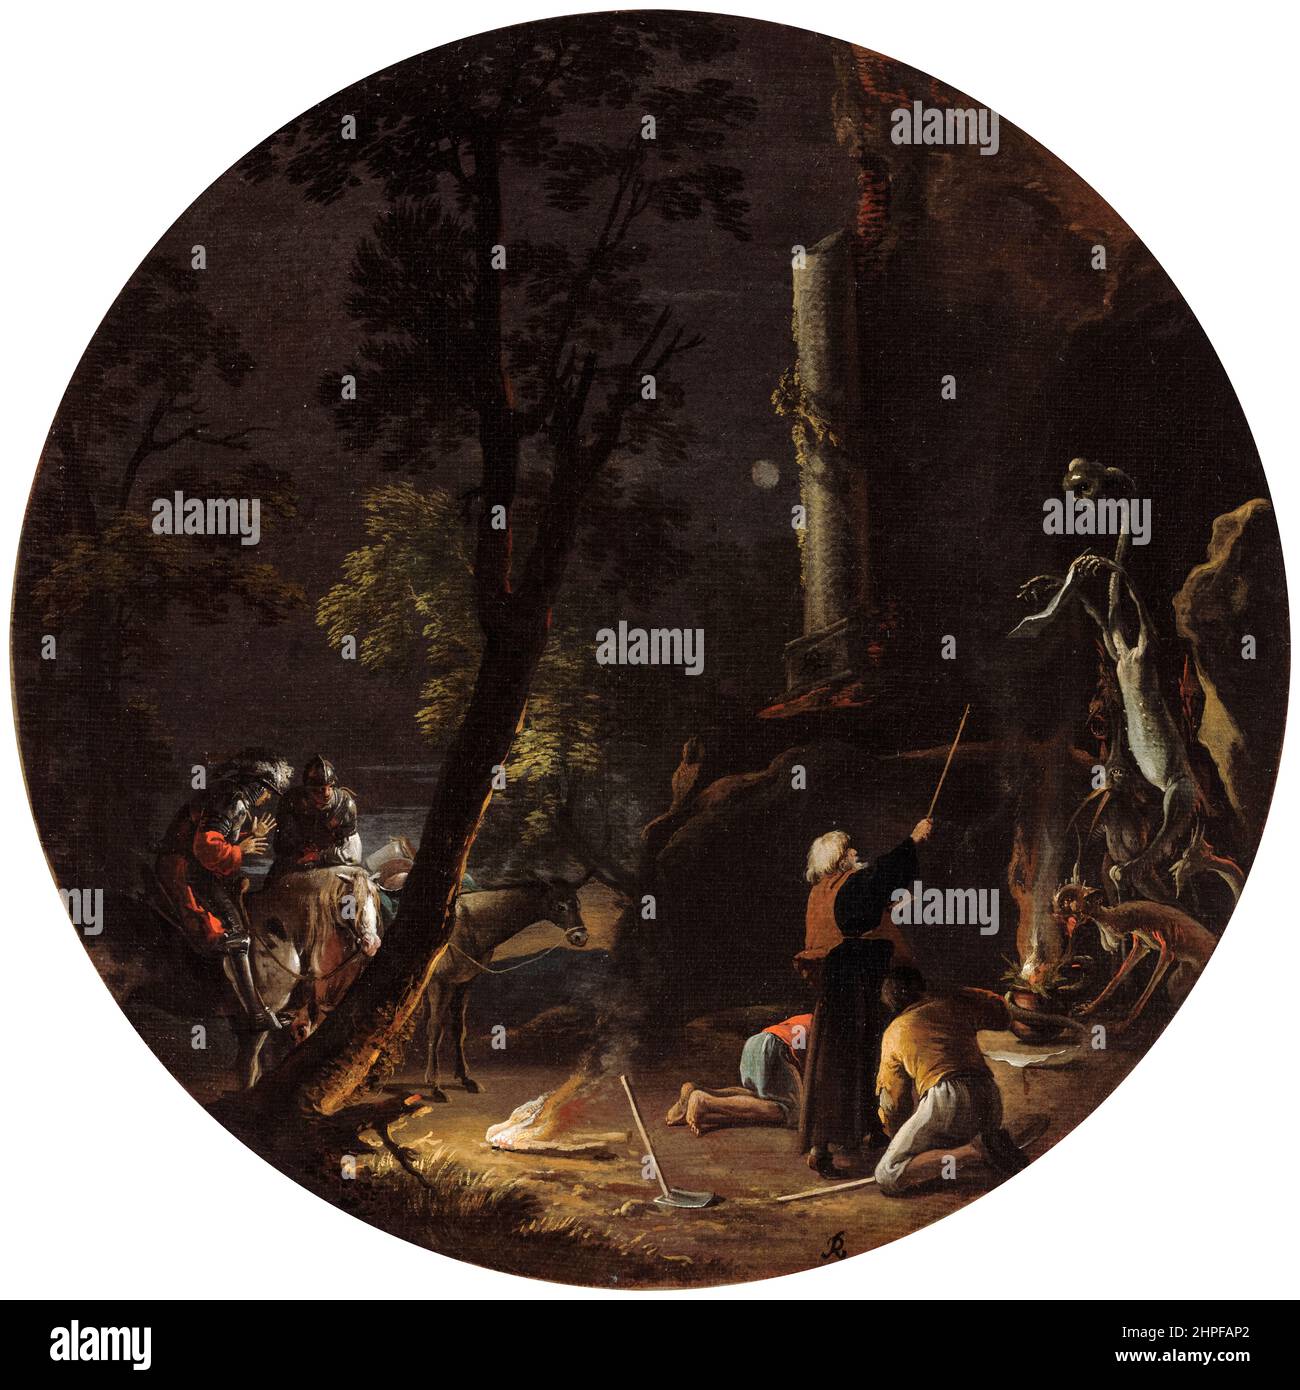 Salvator Rosa, scènes de sorcellerie : nuit, peinture, huile sur toile, 1645-1649 Banque D'Images